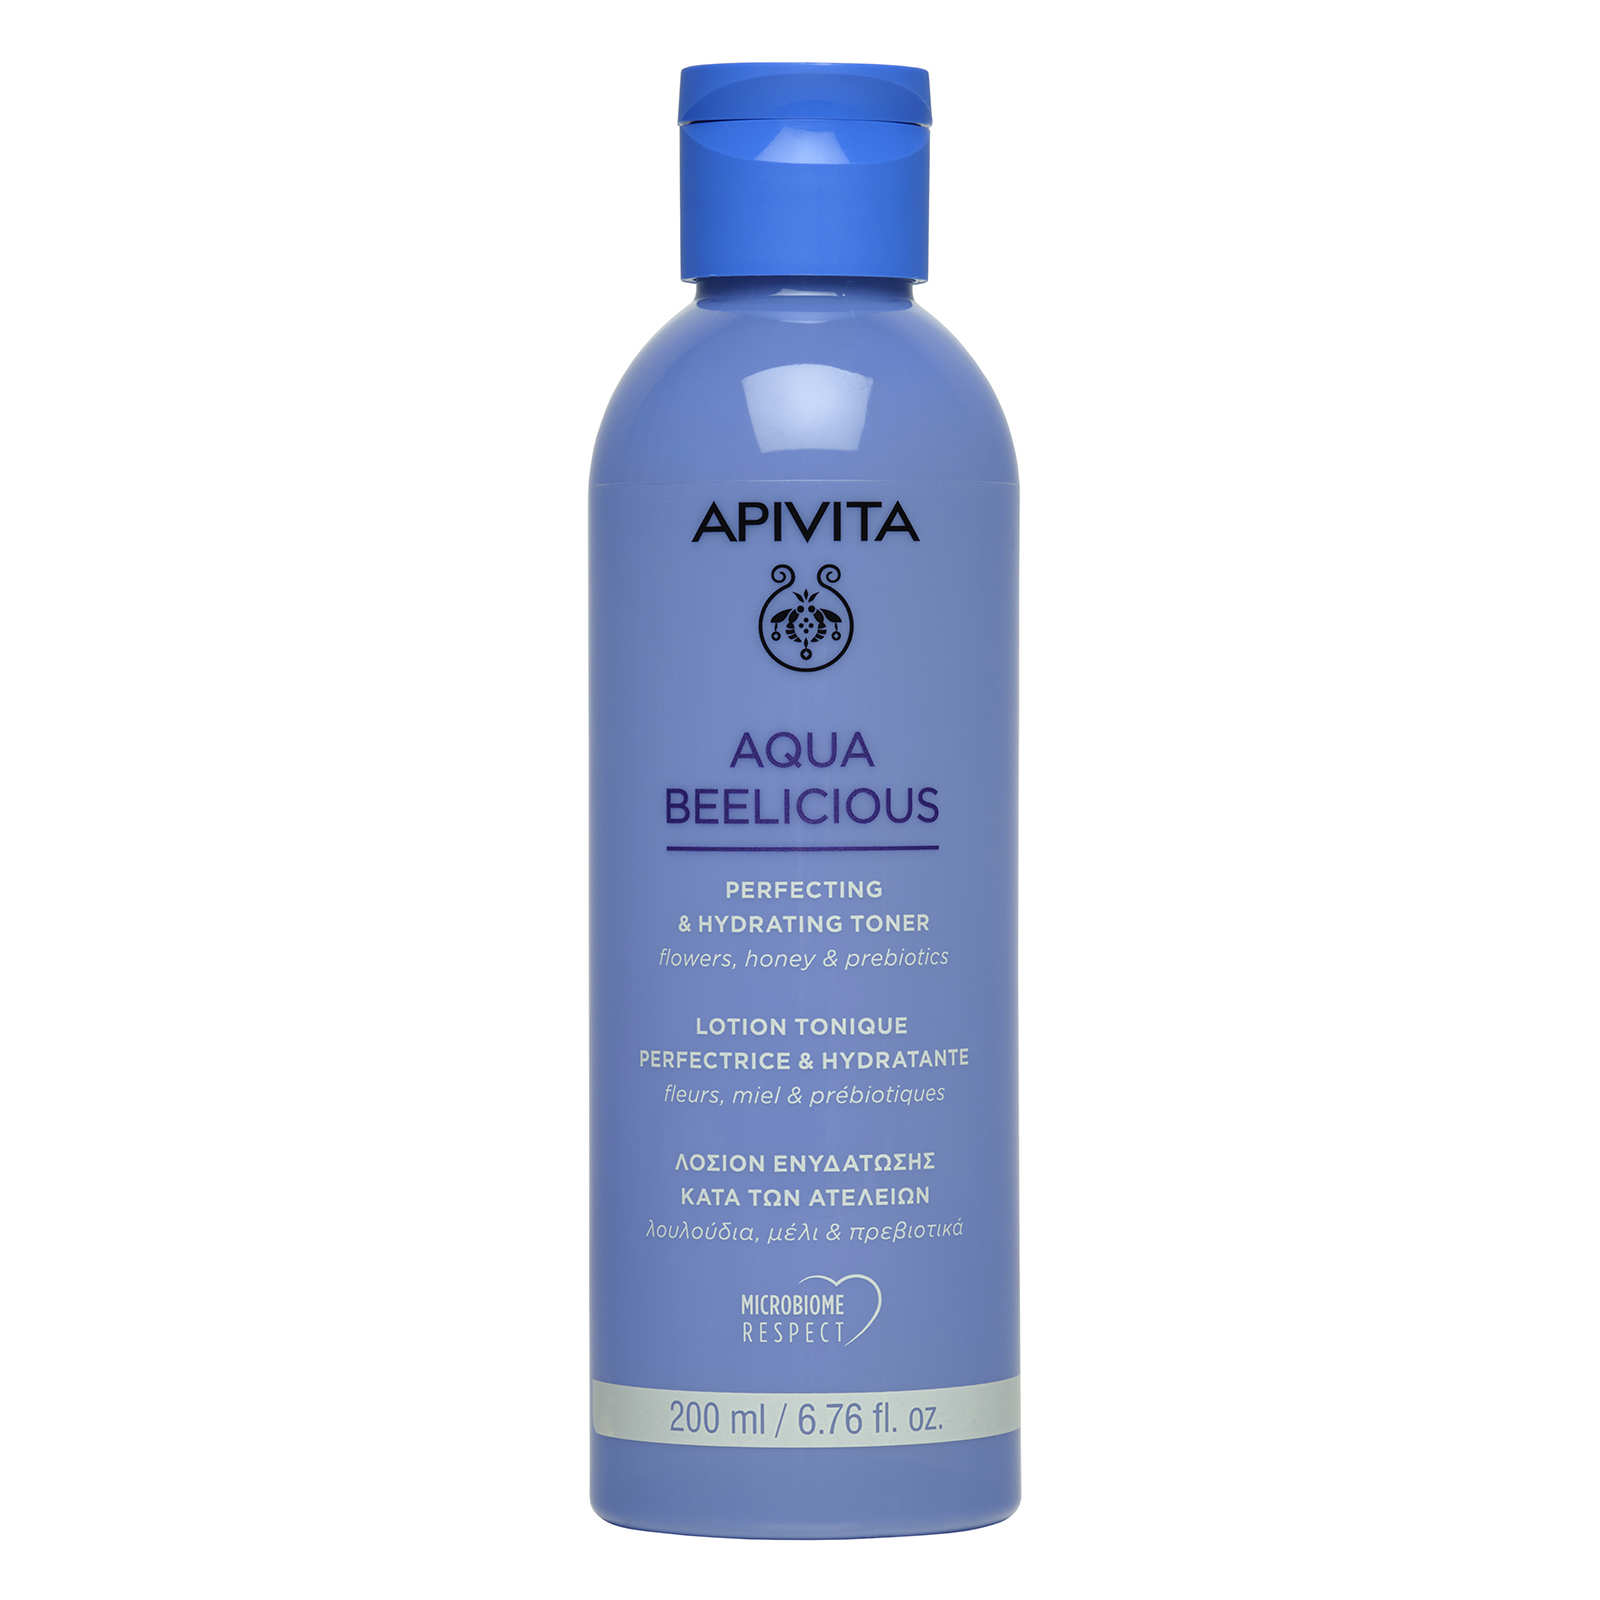 Aqua Beelicious de Apivita 16,50 euros